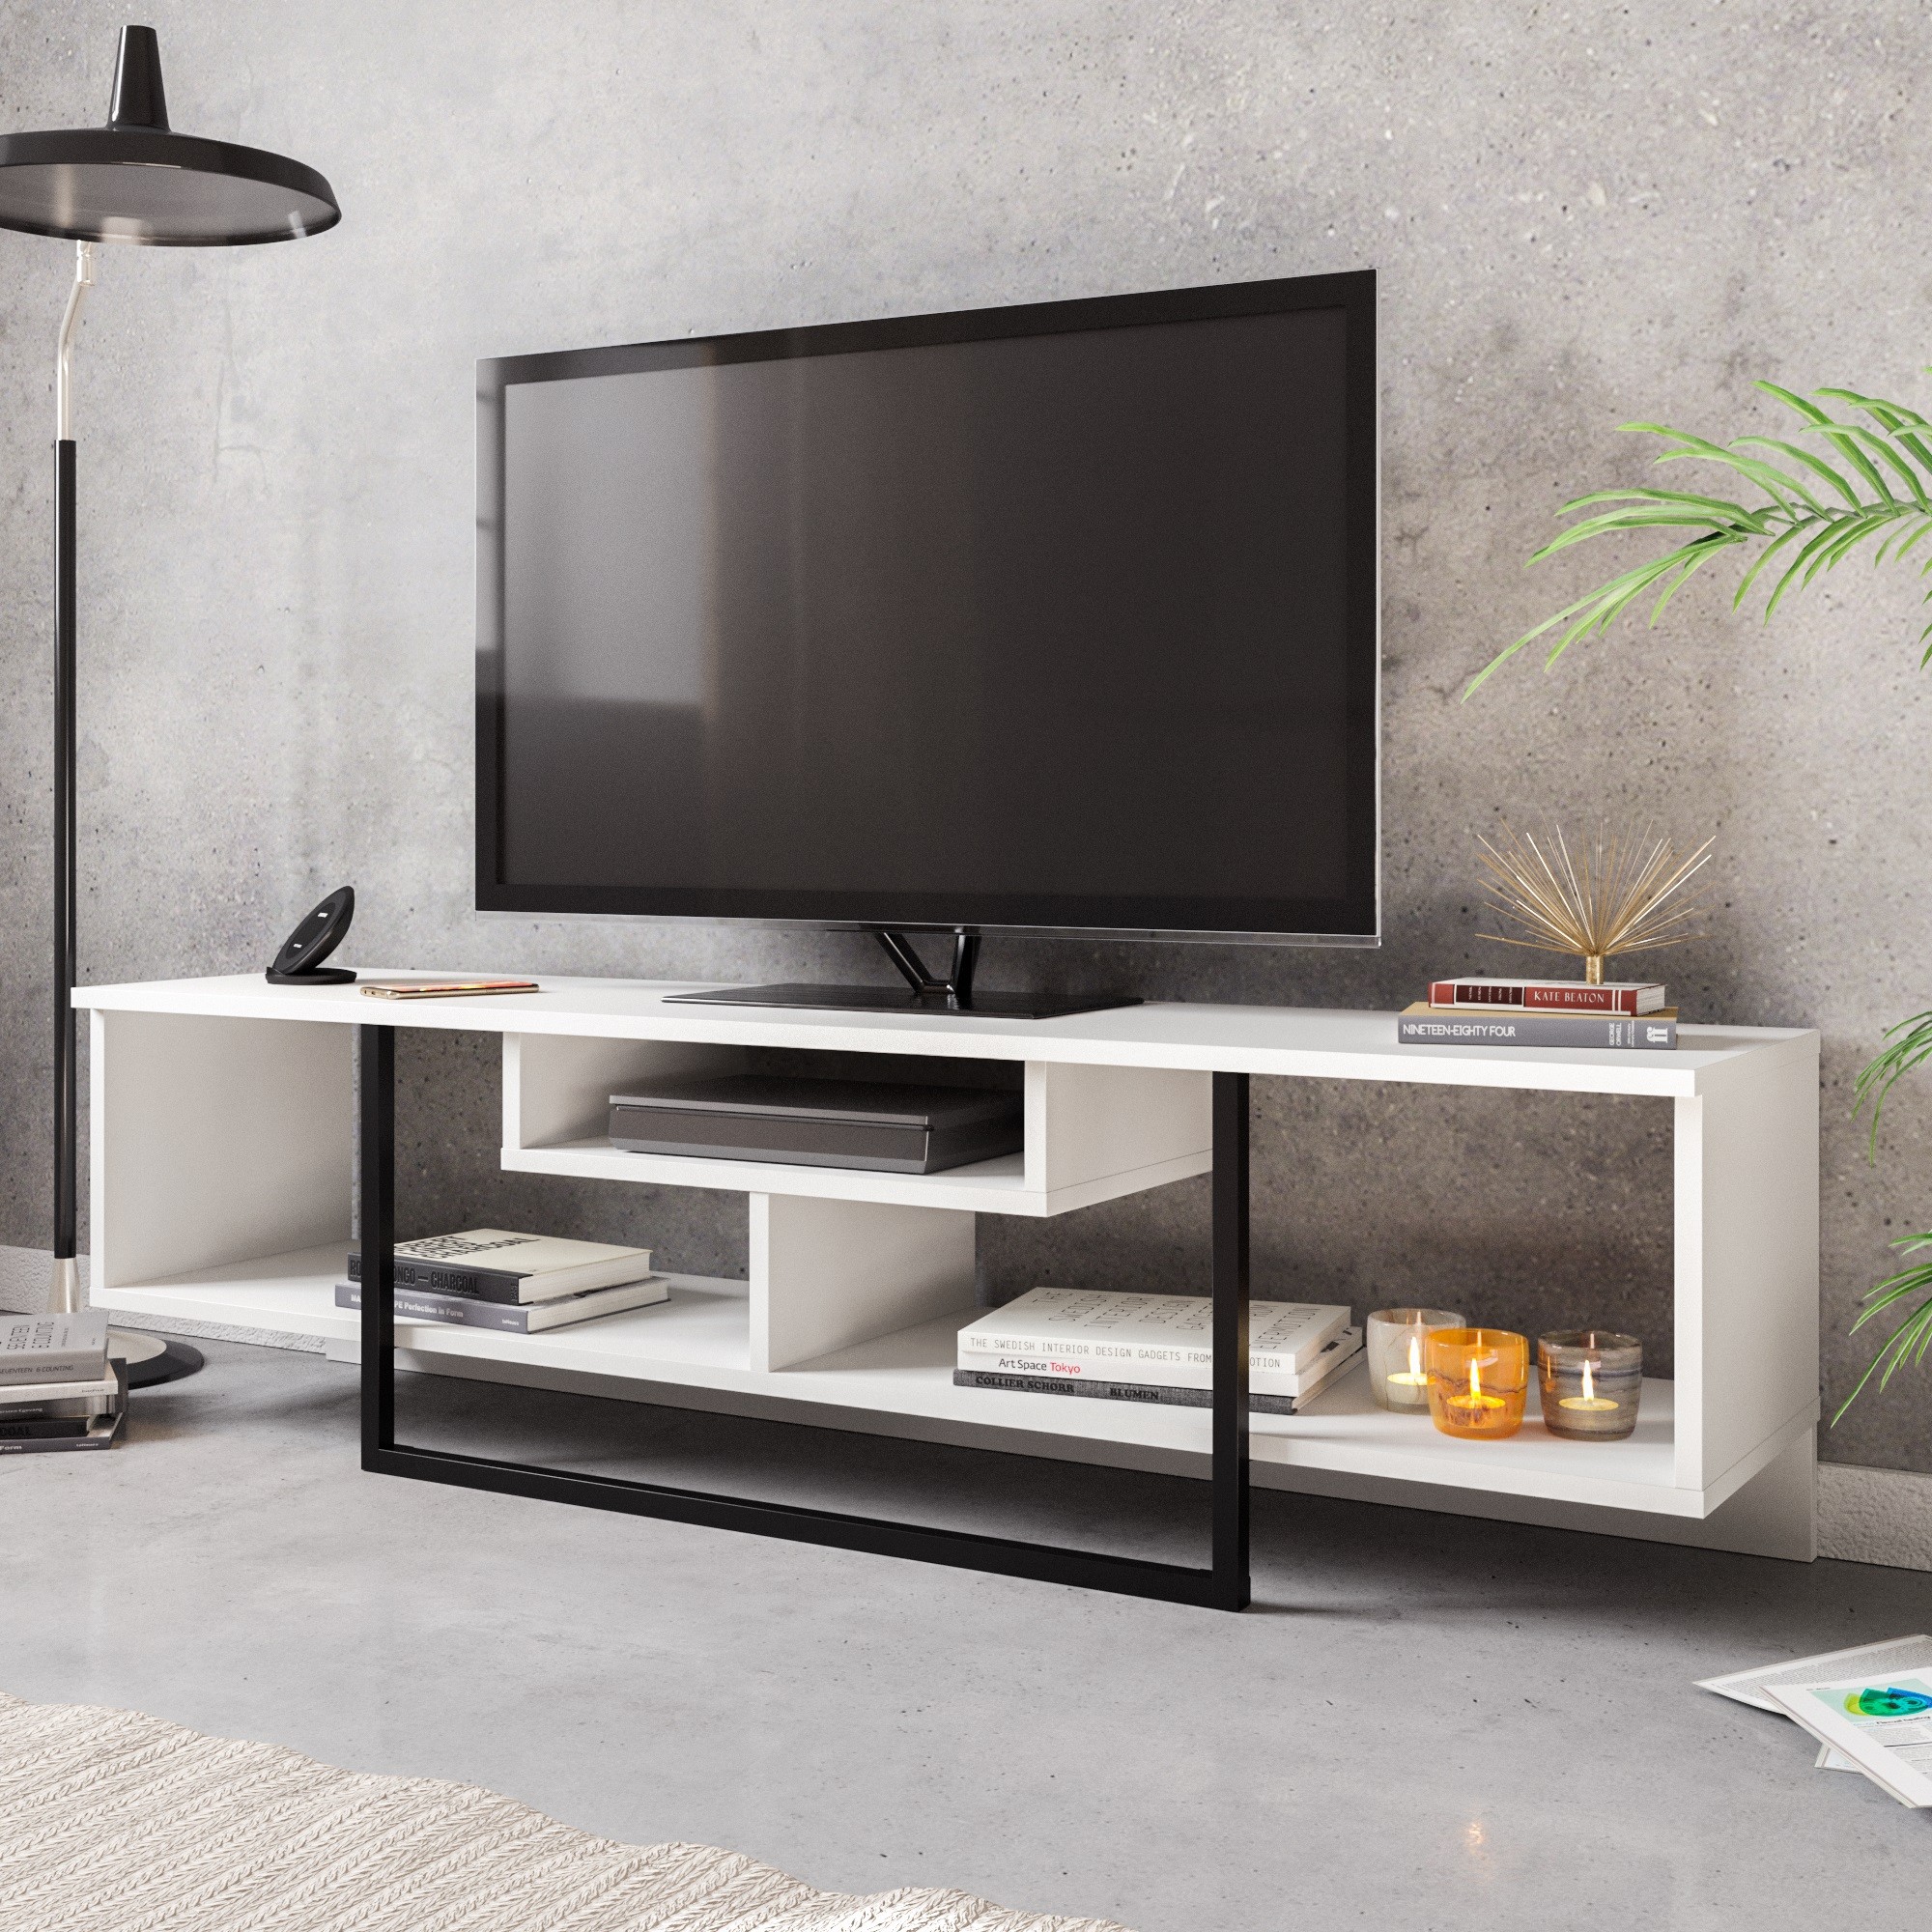 Televizní stolek ASAL bílý černý